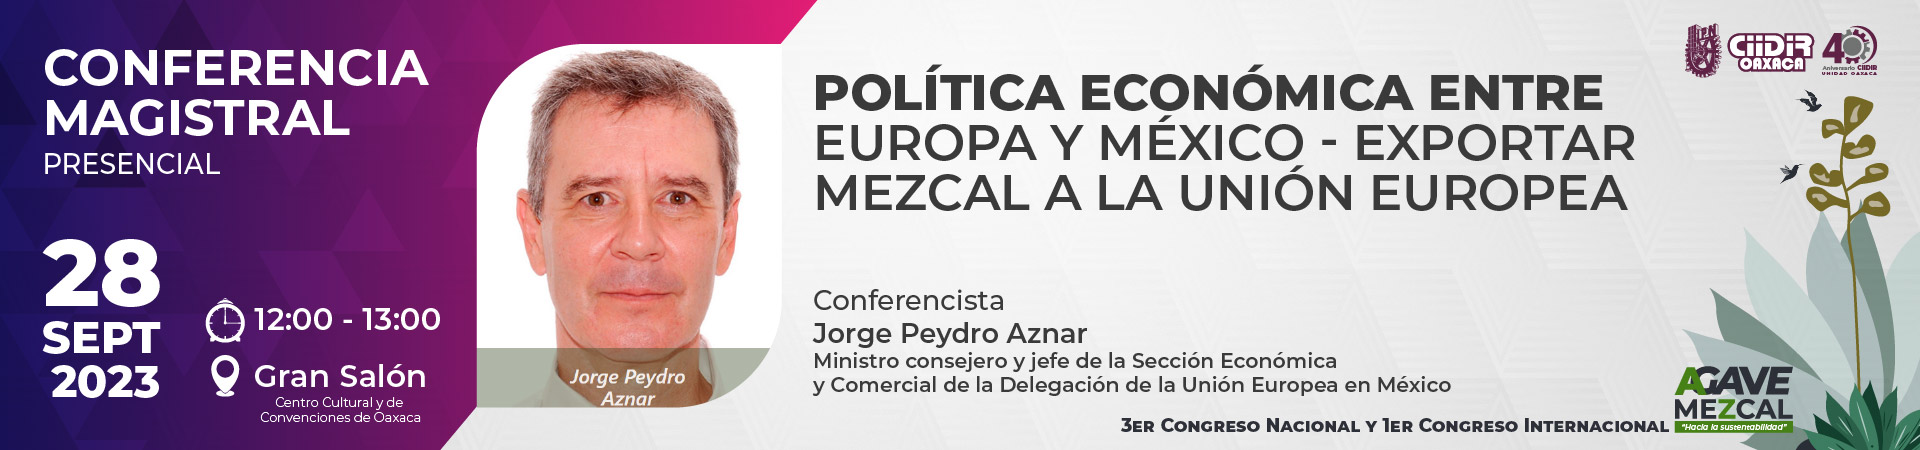 Conferencista Jorge Peydro Aznar - Política económica entre Europa y México